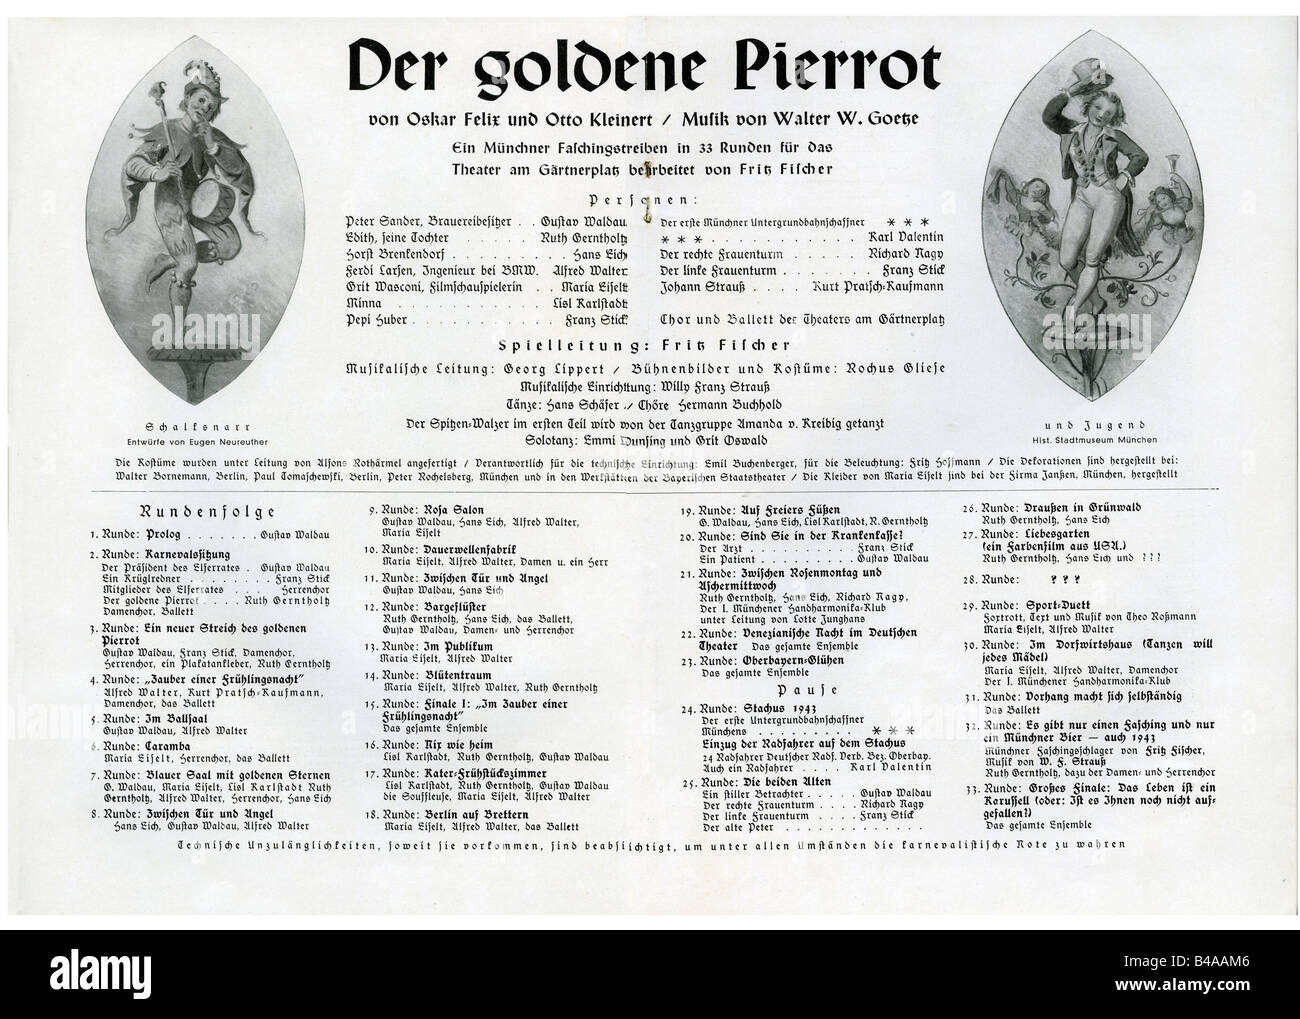 Theater, Operette 'Der goldene Pierrot' von Oskar Felix und Oskar kleiner, Musik von Walter Goetze, Aufführung, Theater am Gärtnerplatz, München, 1943, Programm, Stockfoto